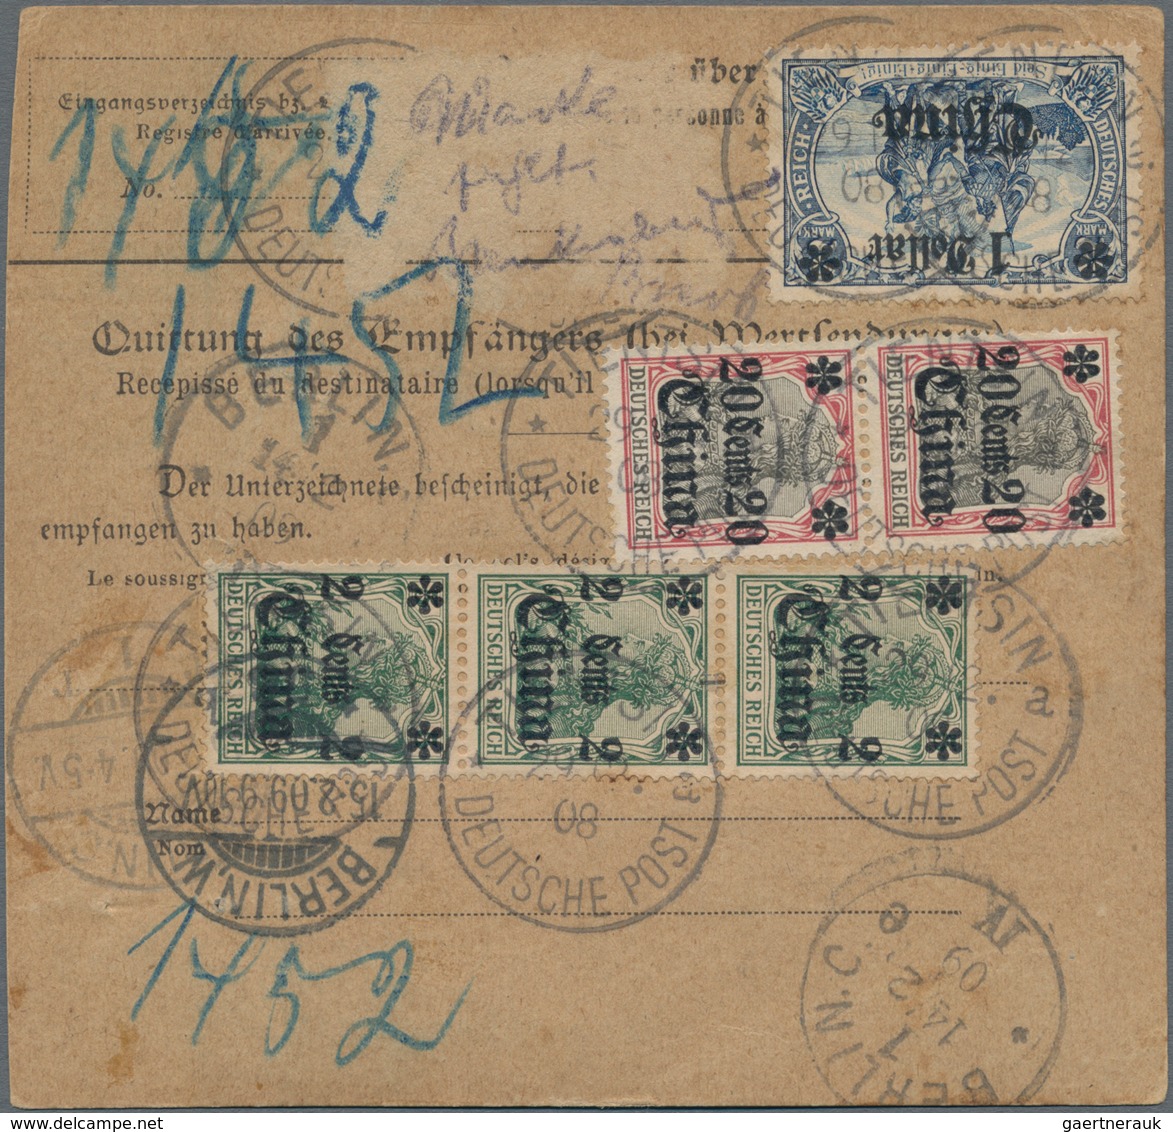 Deutsche Post In China: 1908, Selt. Wertpaketkarte Frank. Mit 3x 2 C. Grün, 2x 20 C. Und 1x 1 $ Auf - China (offices)